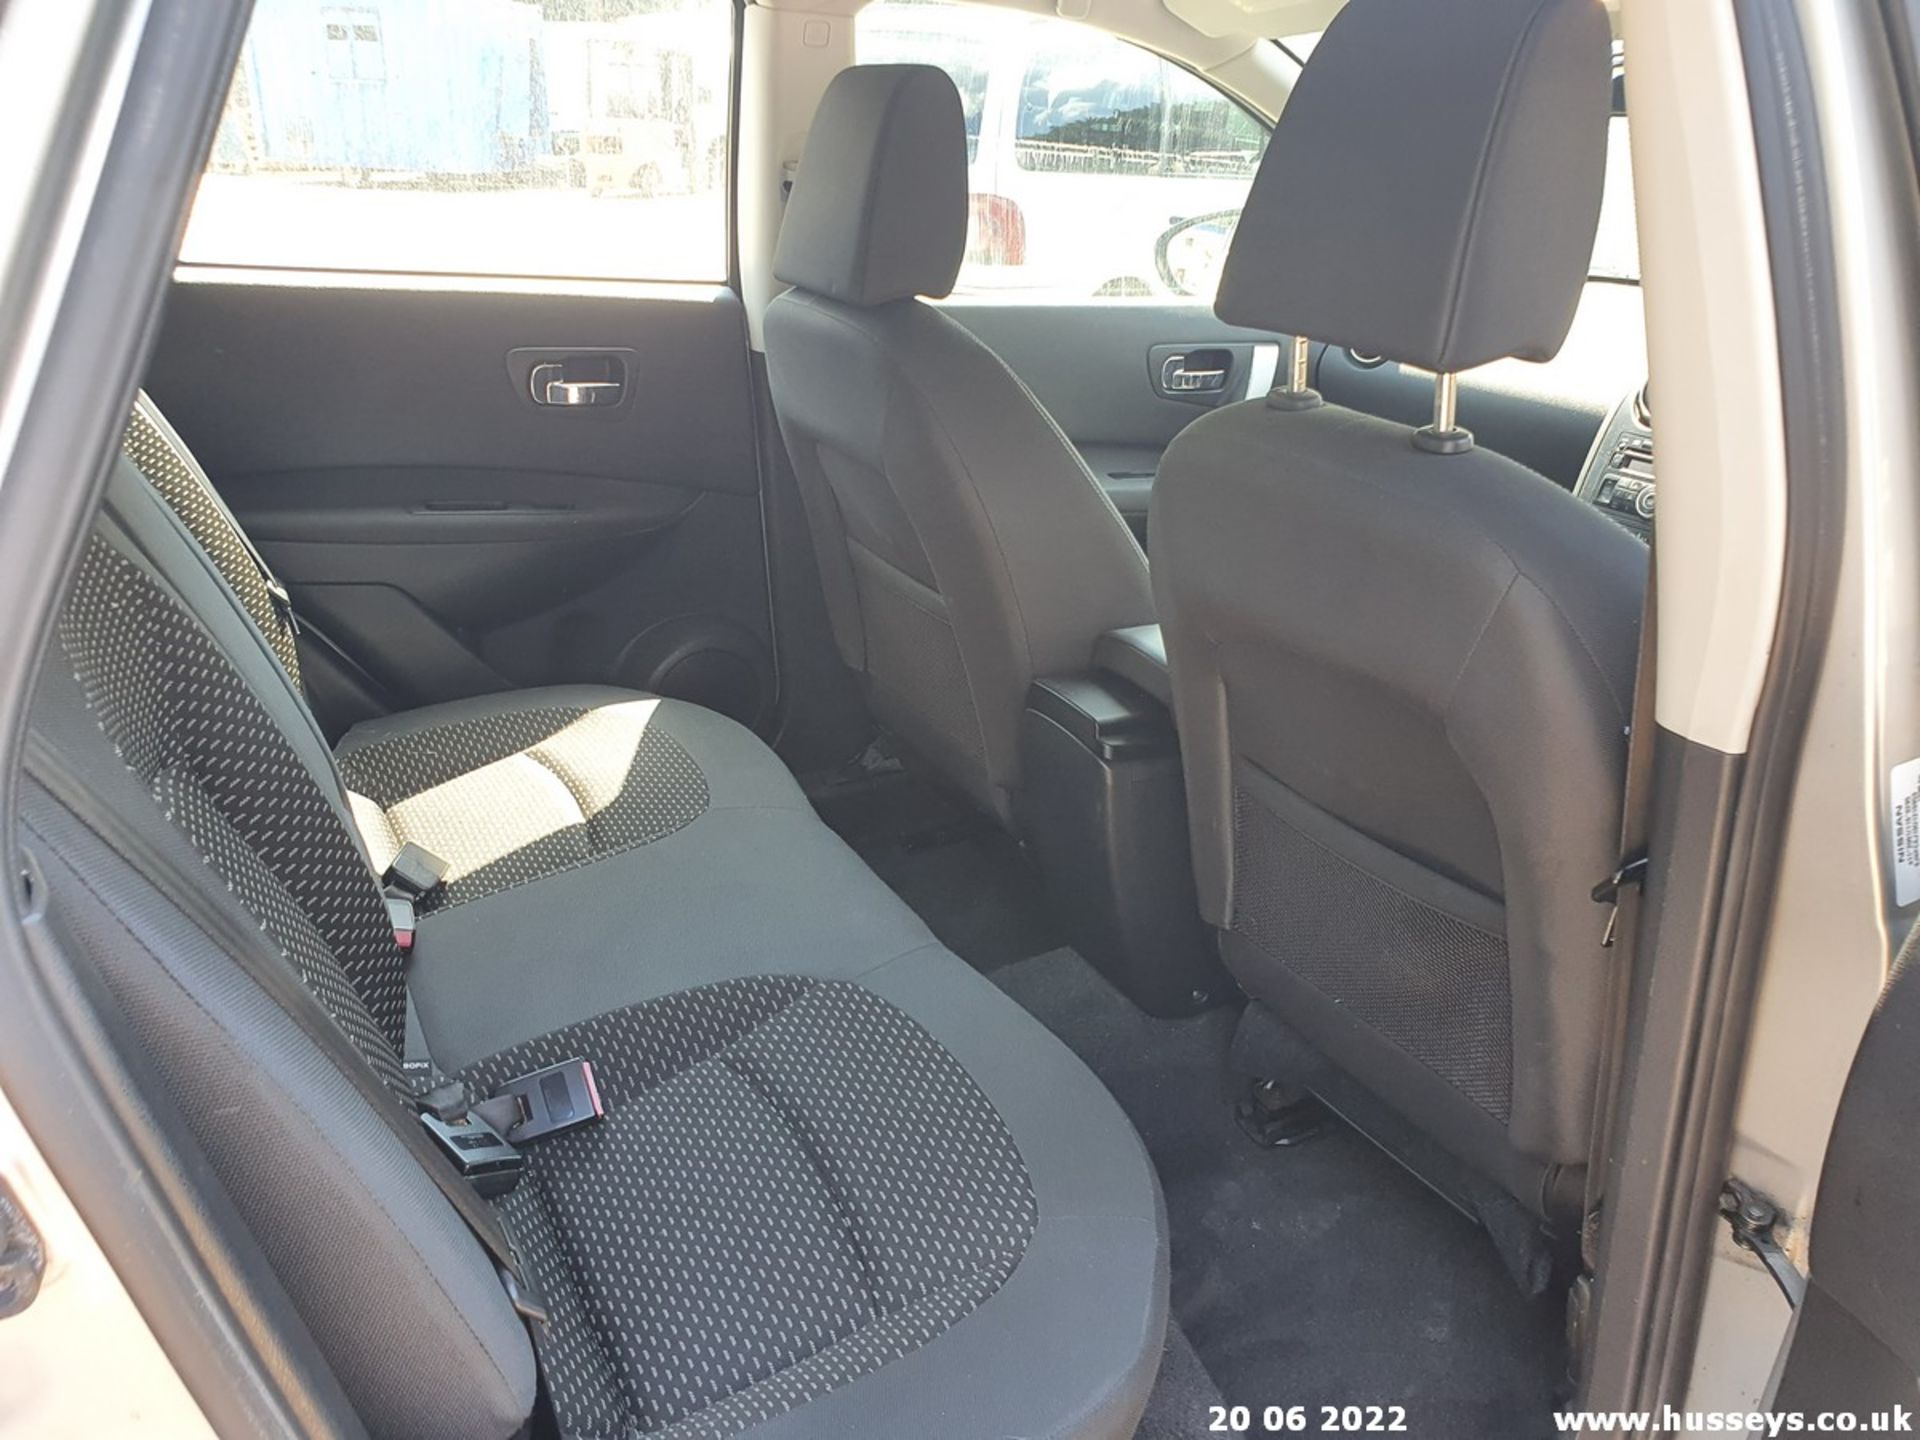 08/08 NISSAN QASHQAI ACENTA DCI 2WD - 1461cc 5dr Hatchback (Silver, 142k) - Image 20 of 38